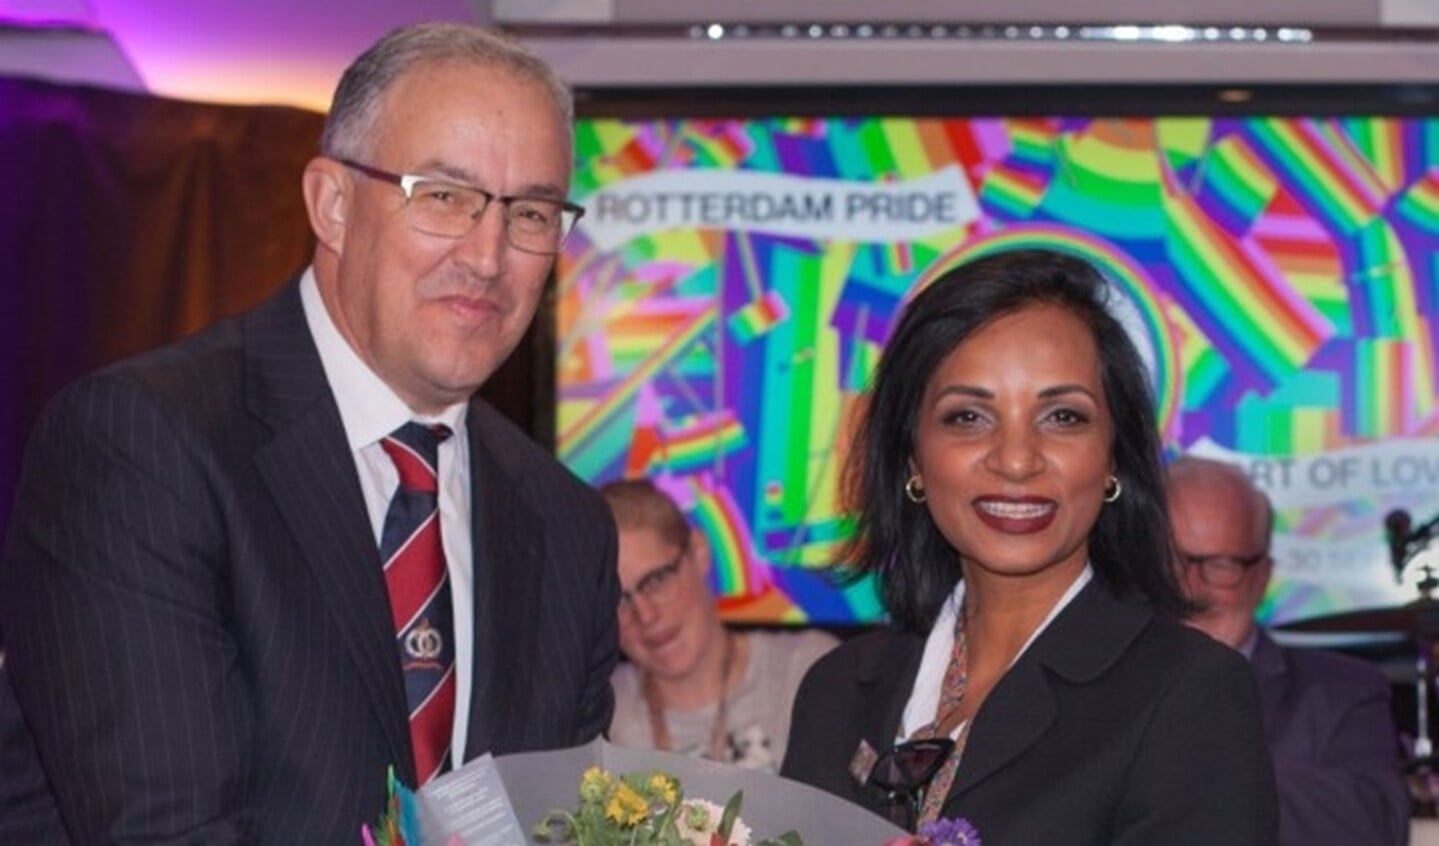 Burgemeester Aboutaleb met Dr. Anita C. Nanhoe, voorzitster Rotterdam Pride 